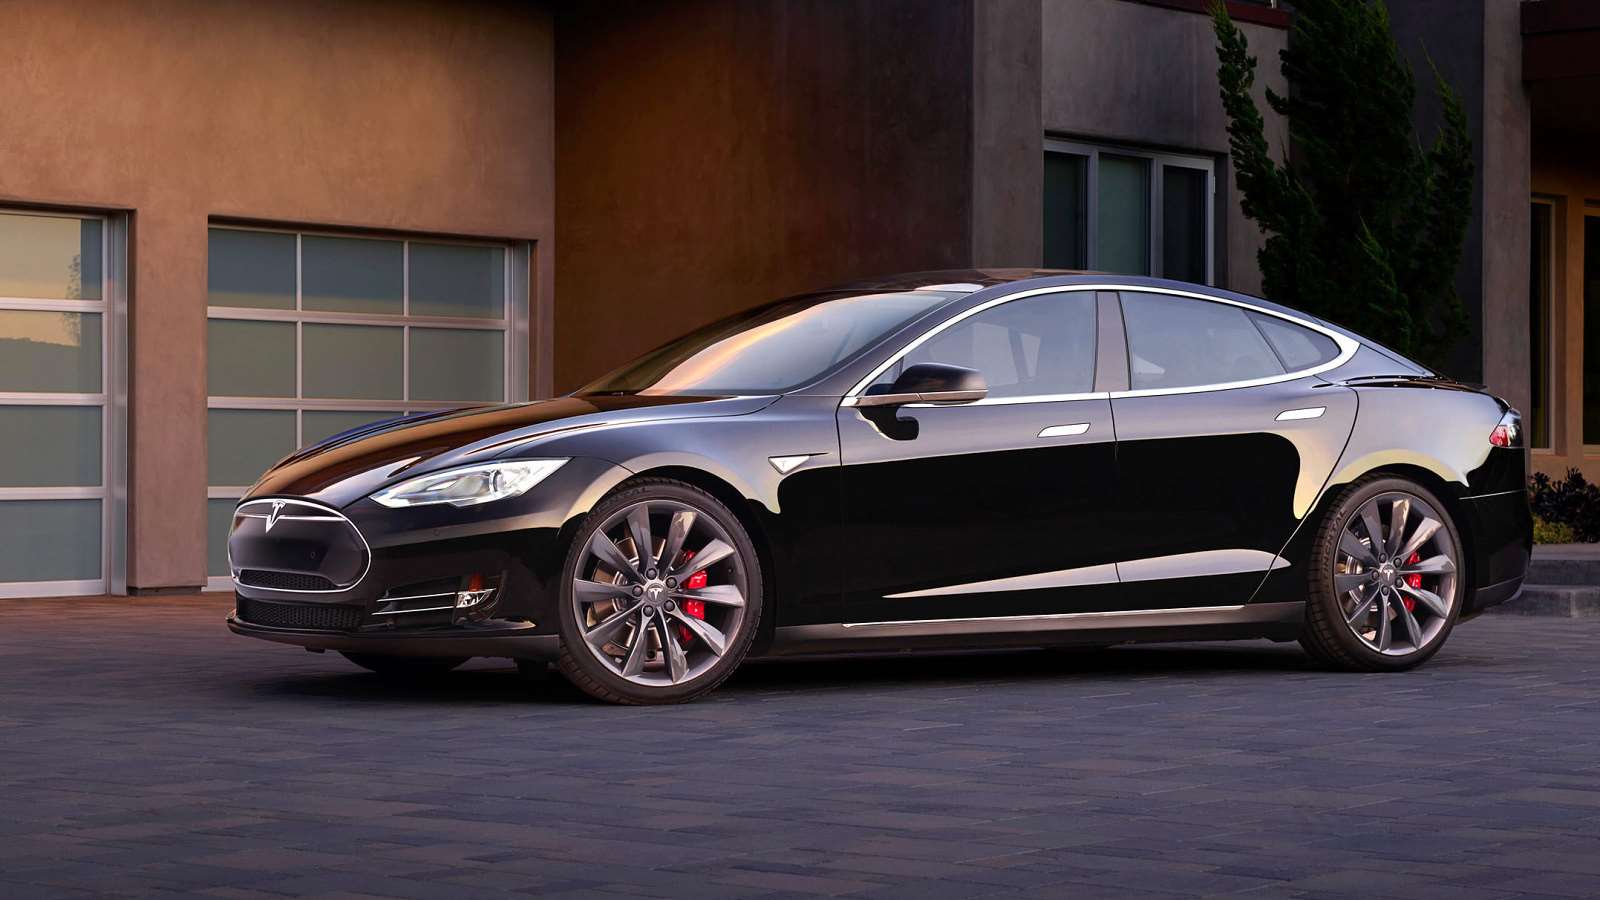 Galerie - Prodeje opět vzrostou: Tesla začala prodávat nejlevnější variantu elektromobilu Model 3 – Connect.cz